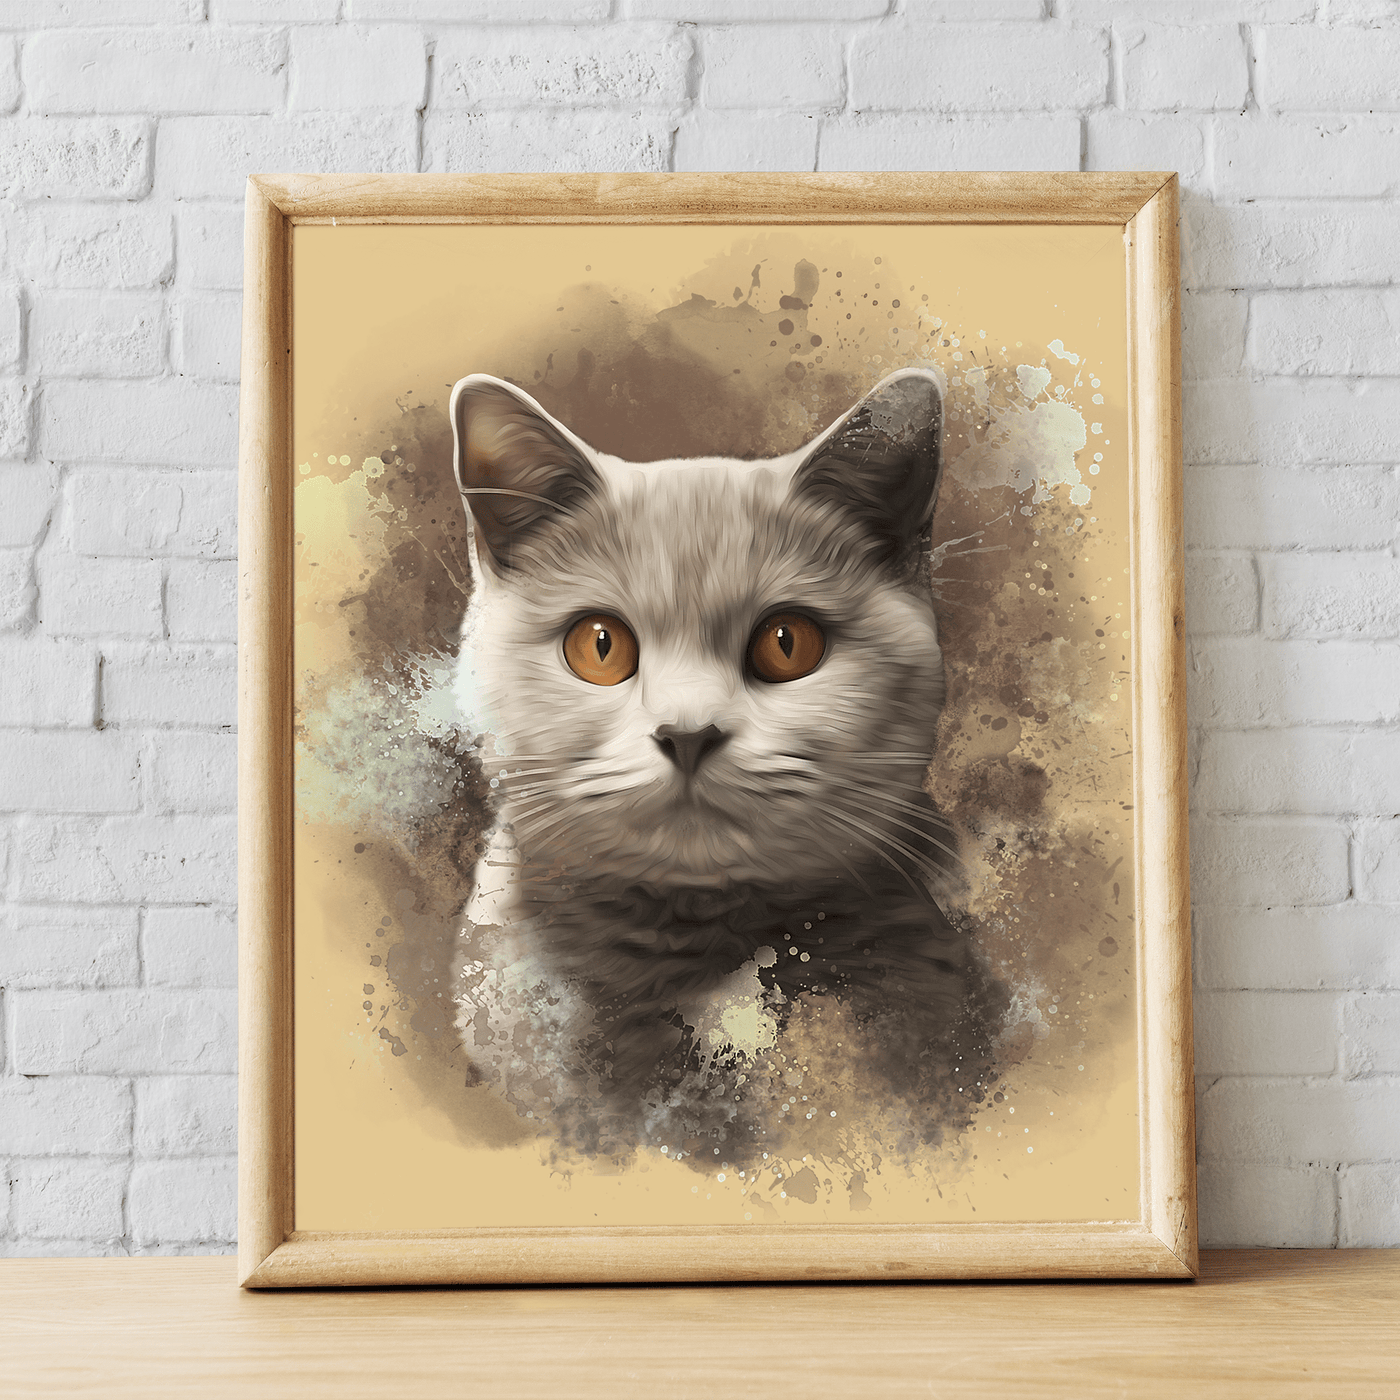 watercolor cat portrait of adorable fur cat